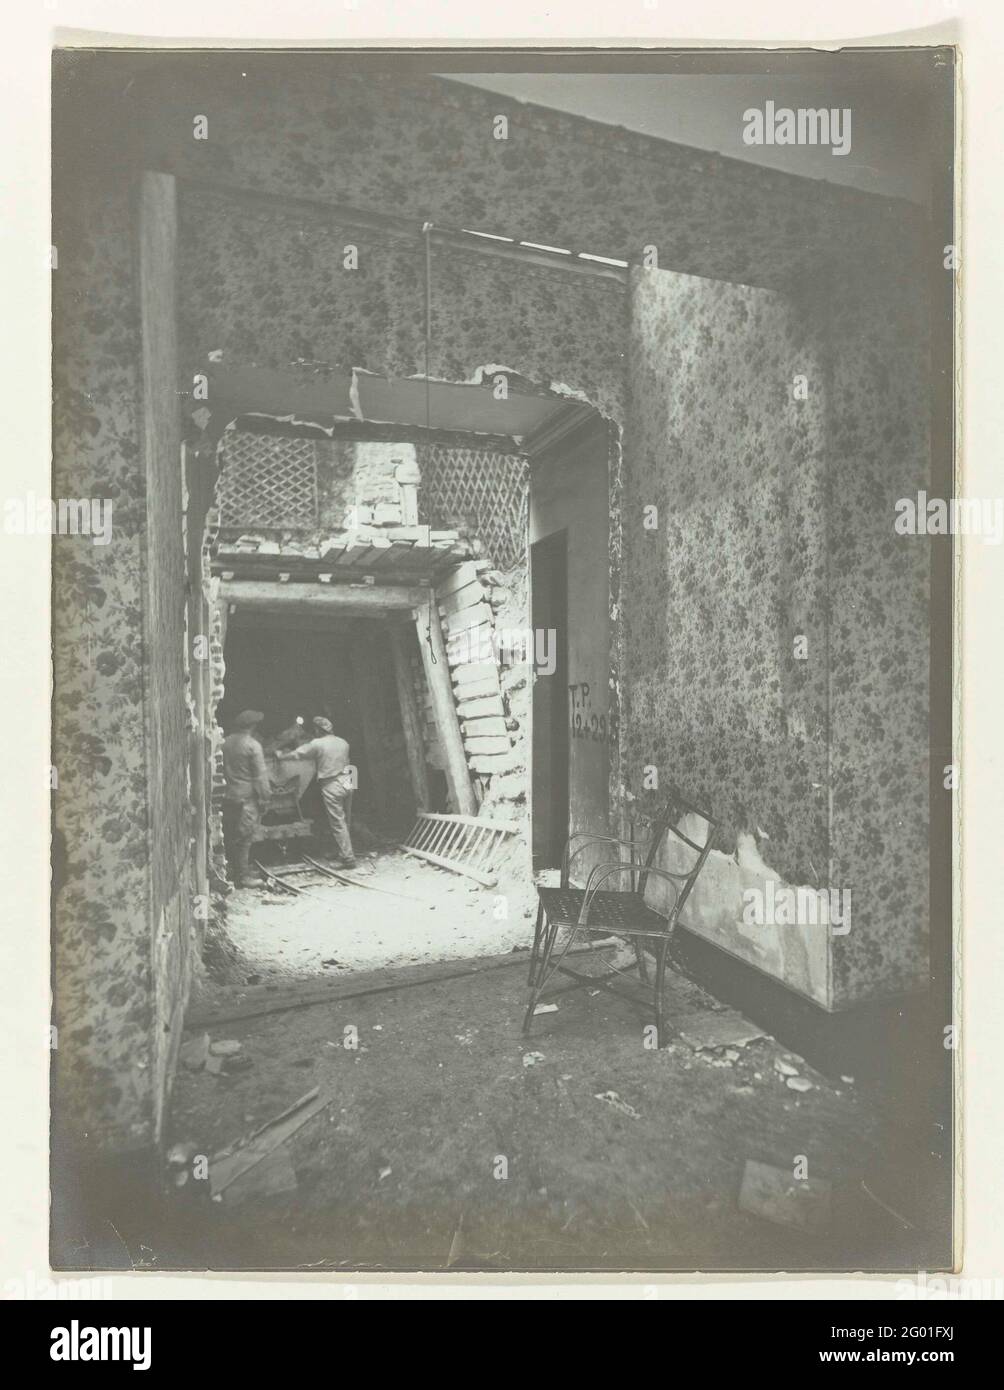 Arbeiter in einem Haus, das für den Bau einer Eisenbahn abgerissen wird,  Paris. Ein halb zerbrochener Raum mit floraler Tapete ist ein Stuhl, der  durch die offene Wand den Bau eines Tunnelrohrs